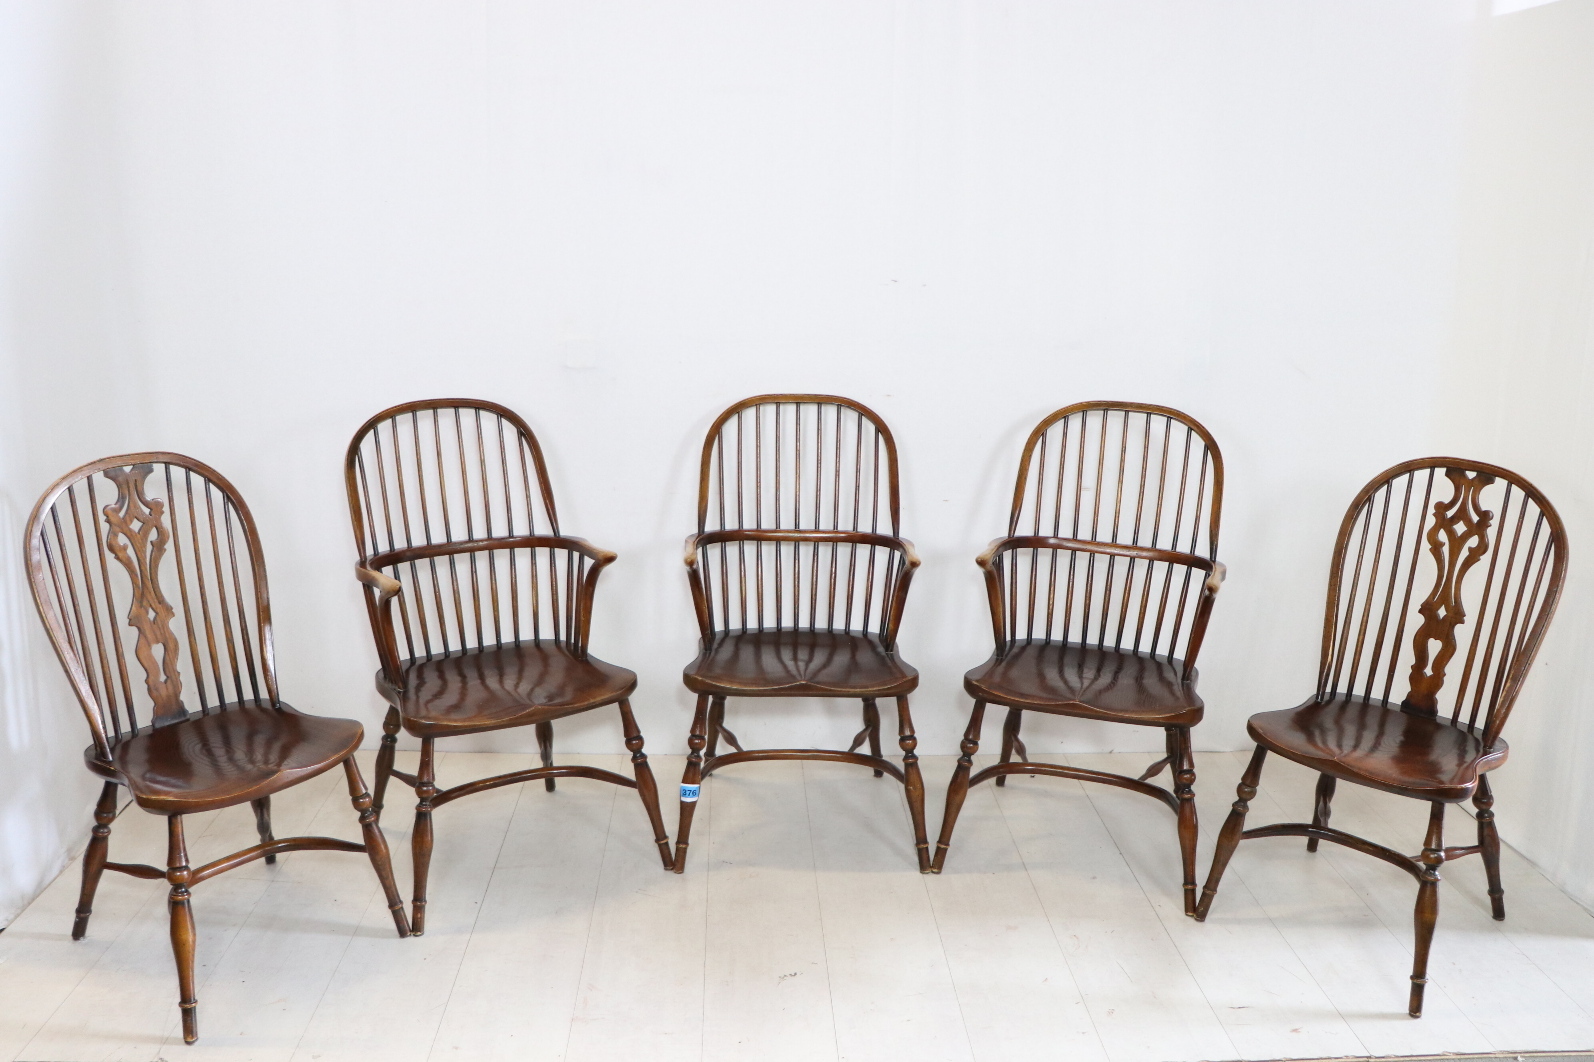 5er Satz antike Windsor Chairs / Landhausstühle, massive Eiche, ca. 1870